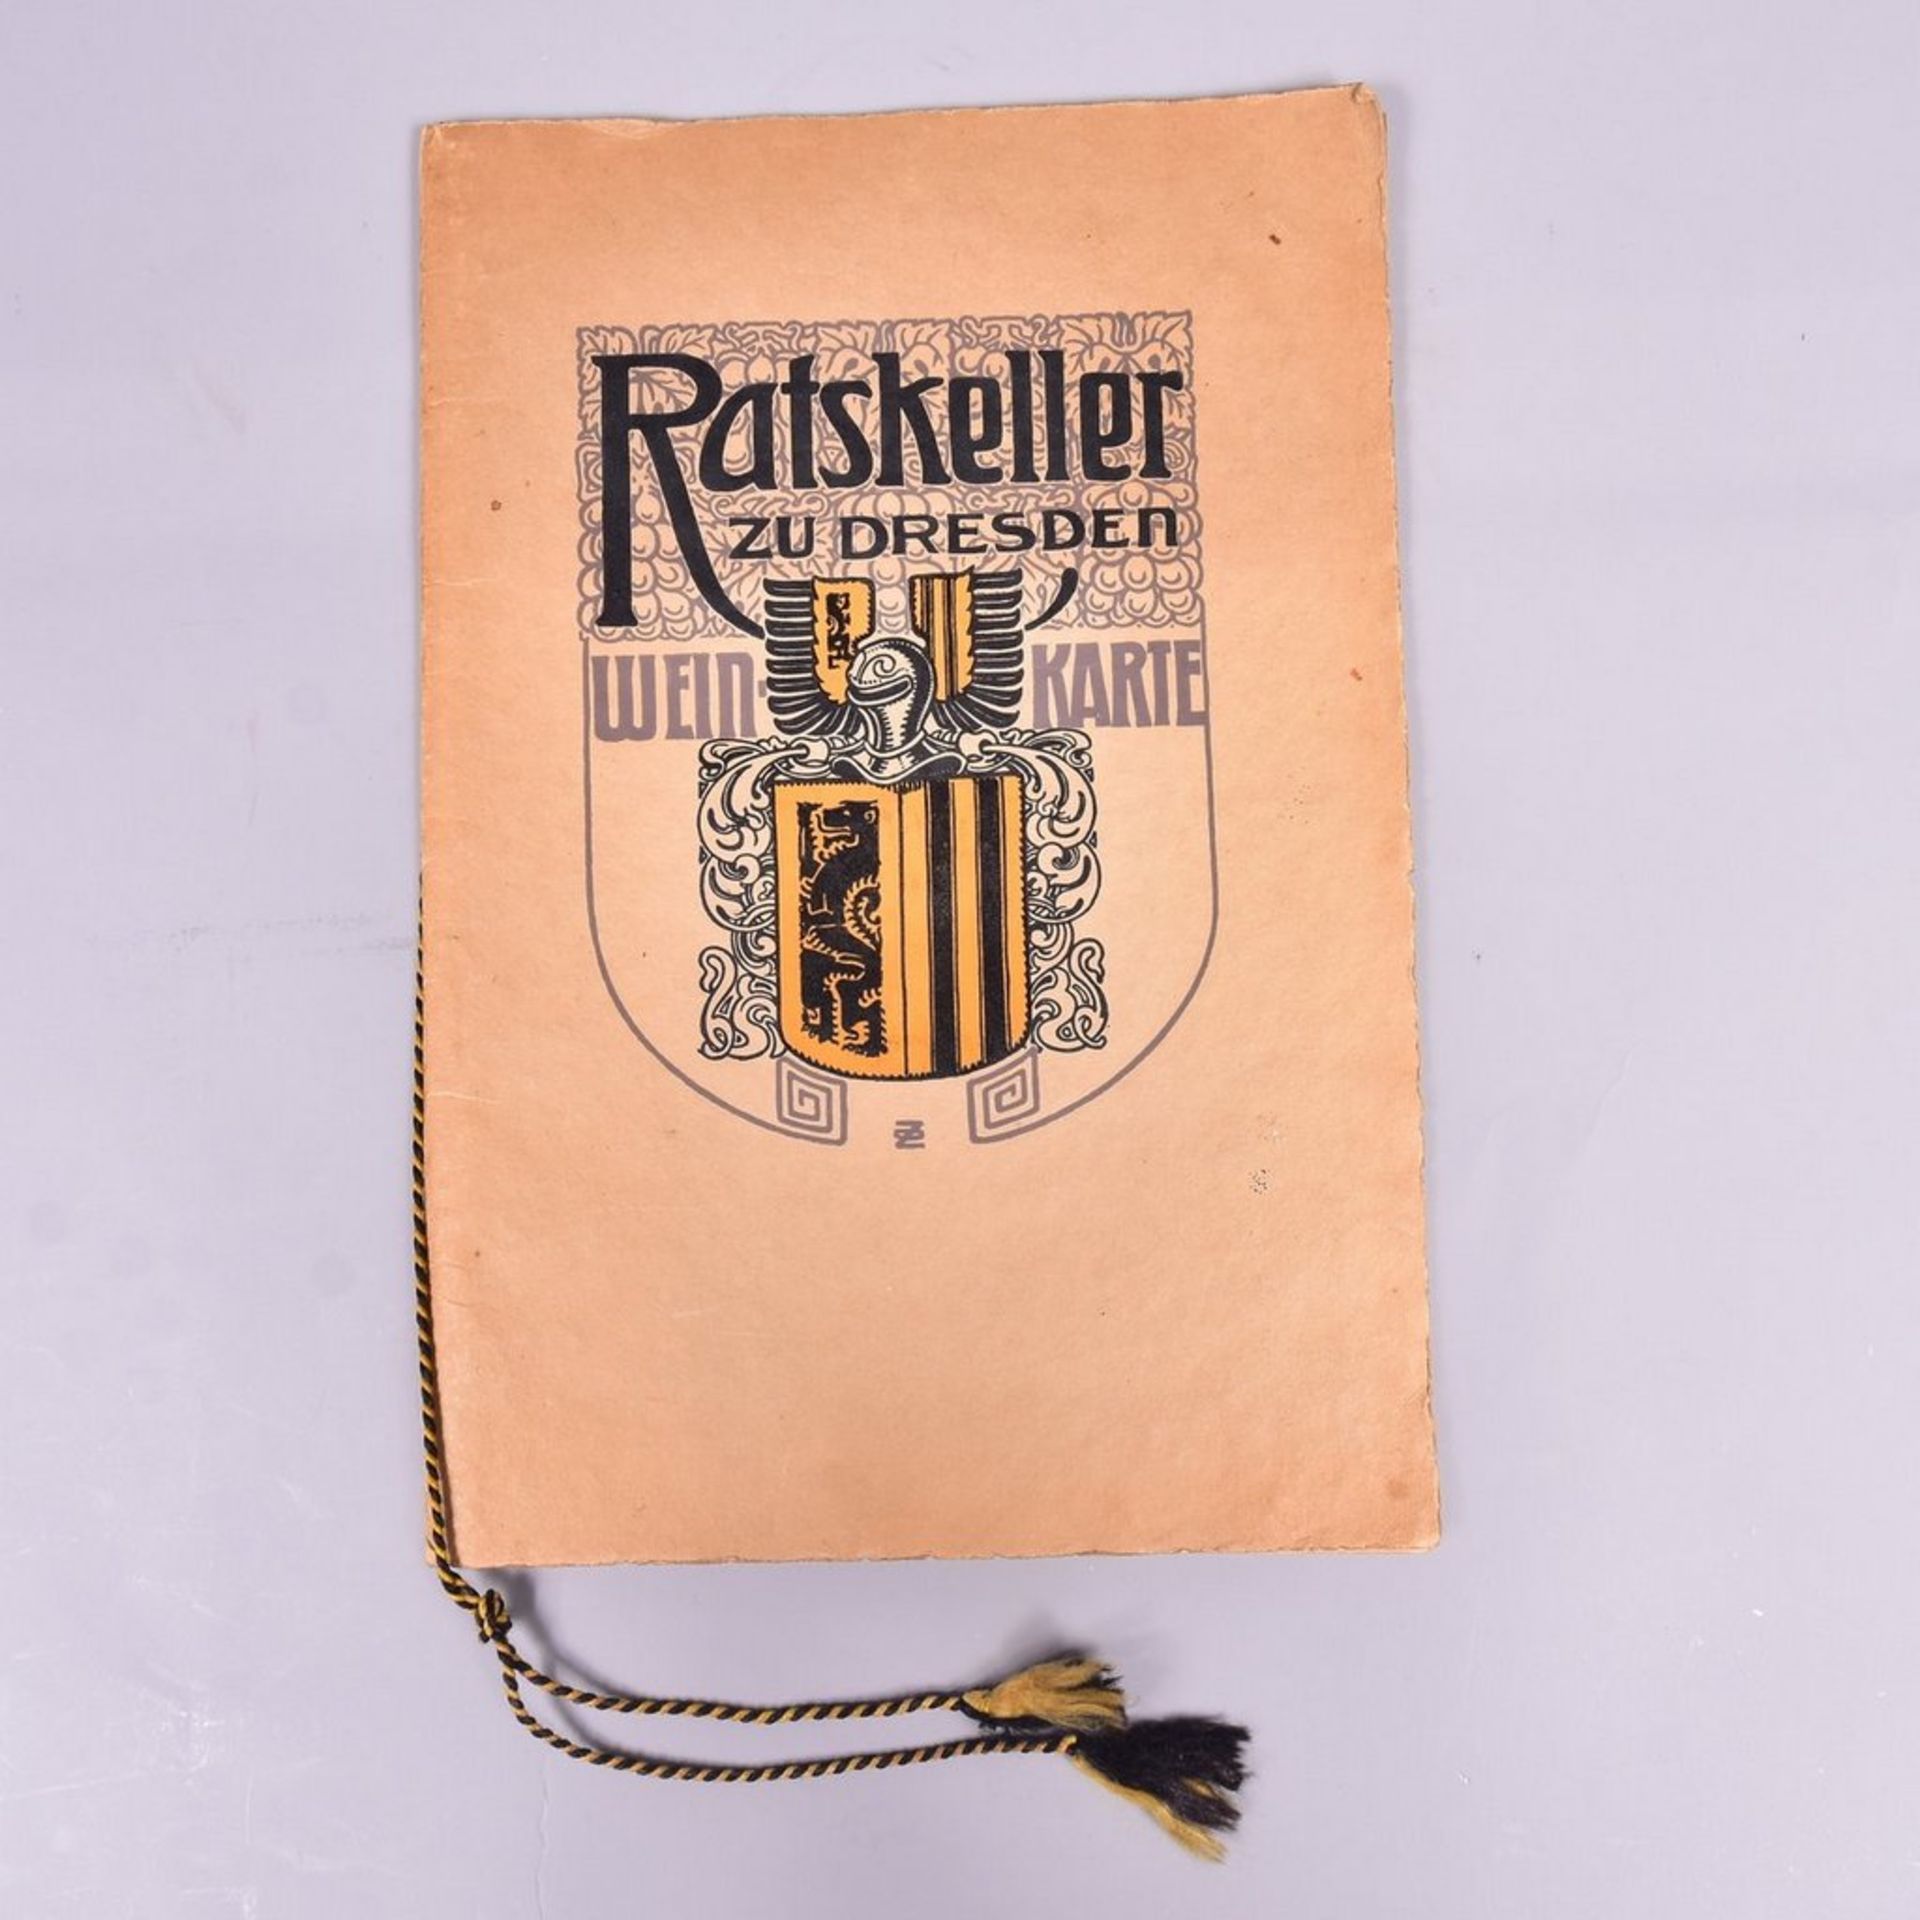 "Weinkarte Ratskeller zu Dresden", um 1910, Sammlerstück, wunderschöner Zeitzeuge im Jugendstil,